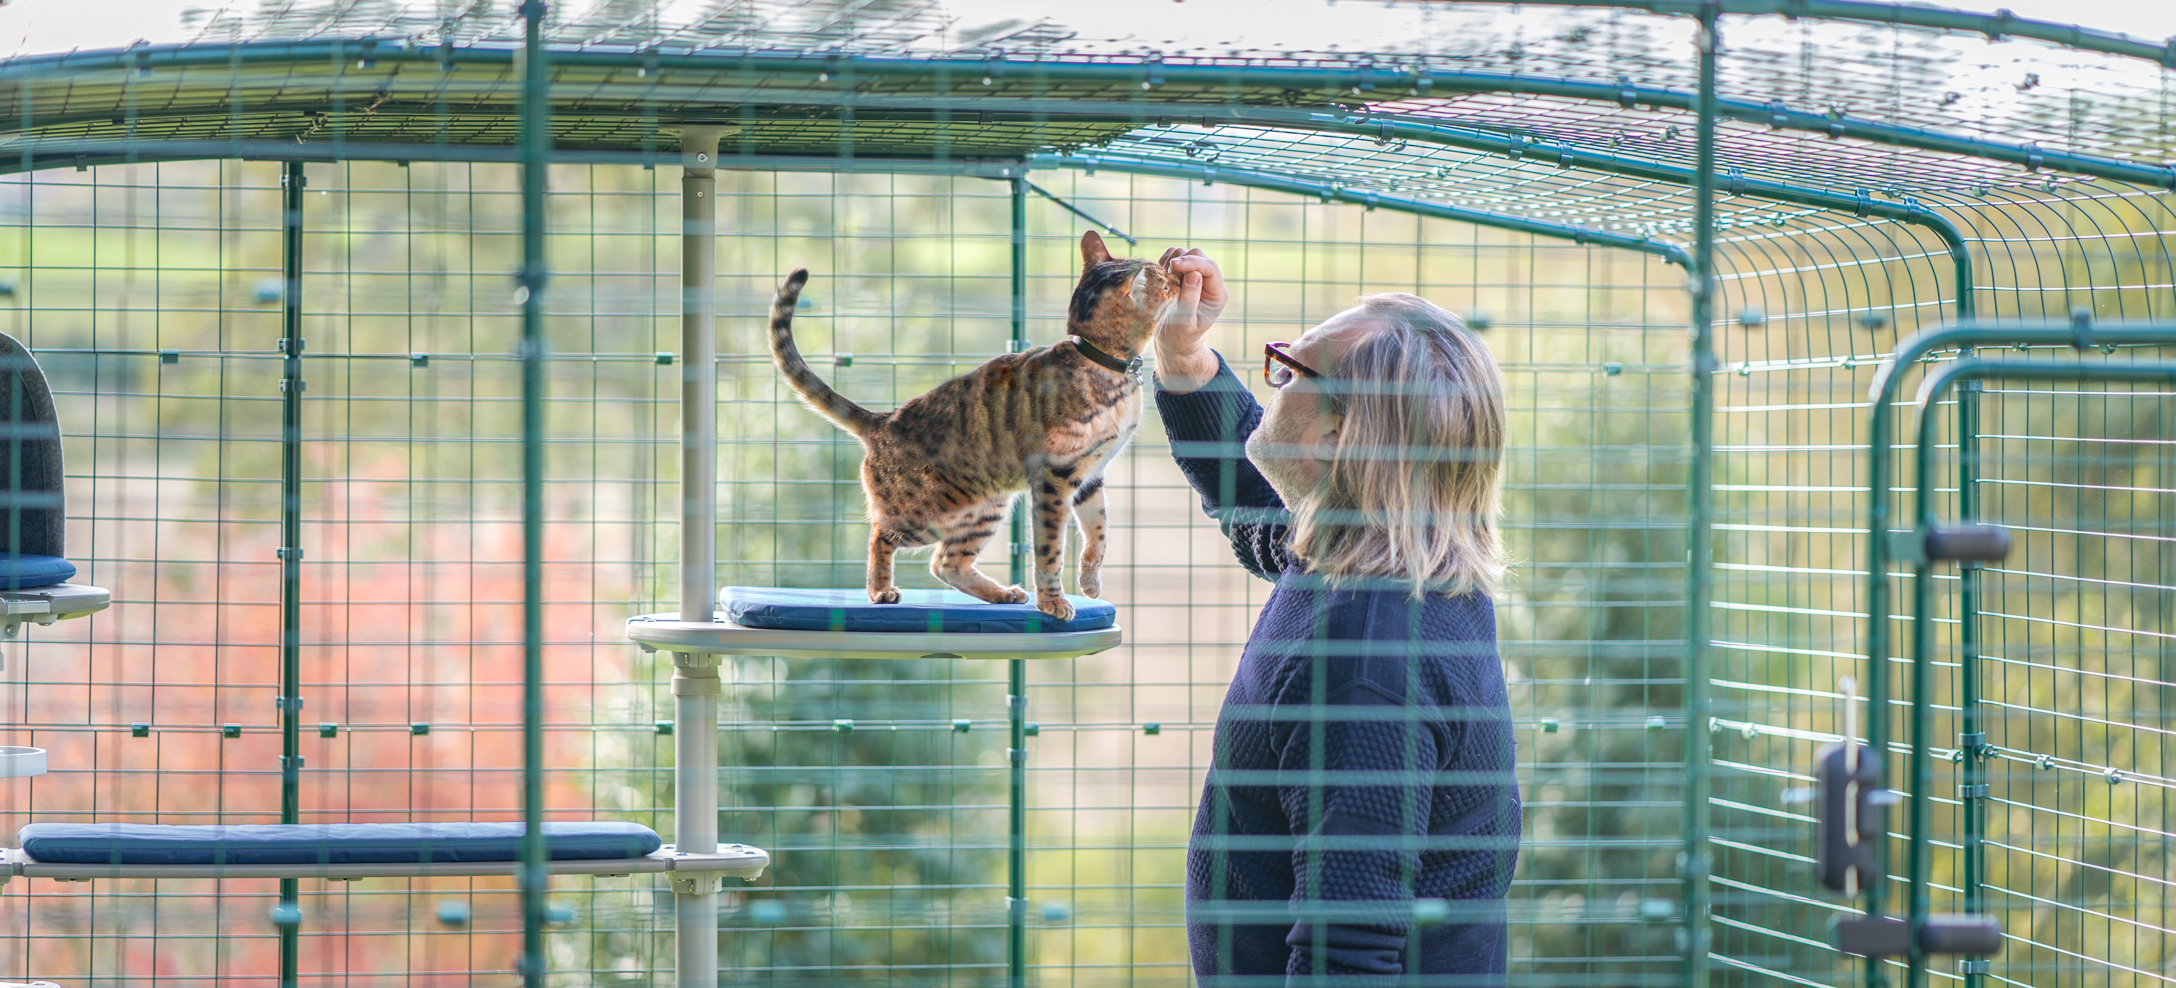 Homme qui caresse un chat sur un arbre à chat d’extérieur Freestyle à l’intérieur d’un enclos pour chat Omlet